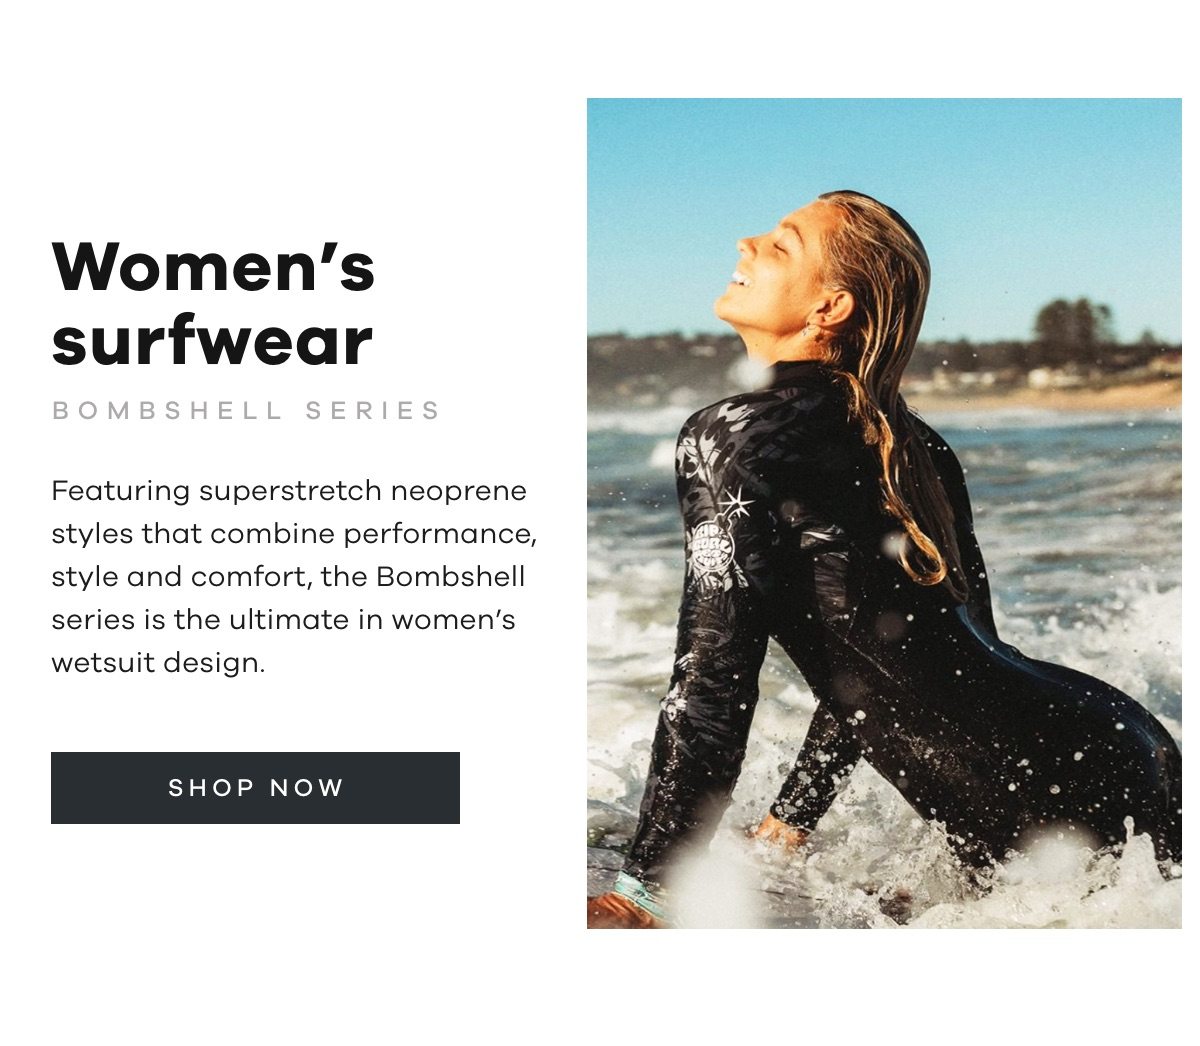 Women's surfwear